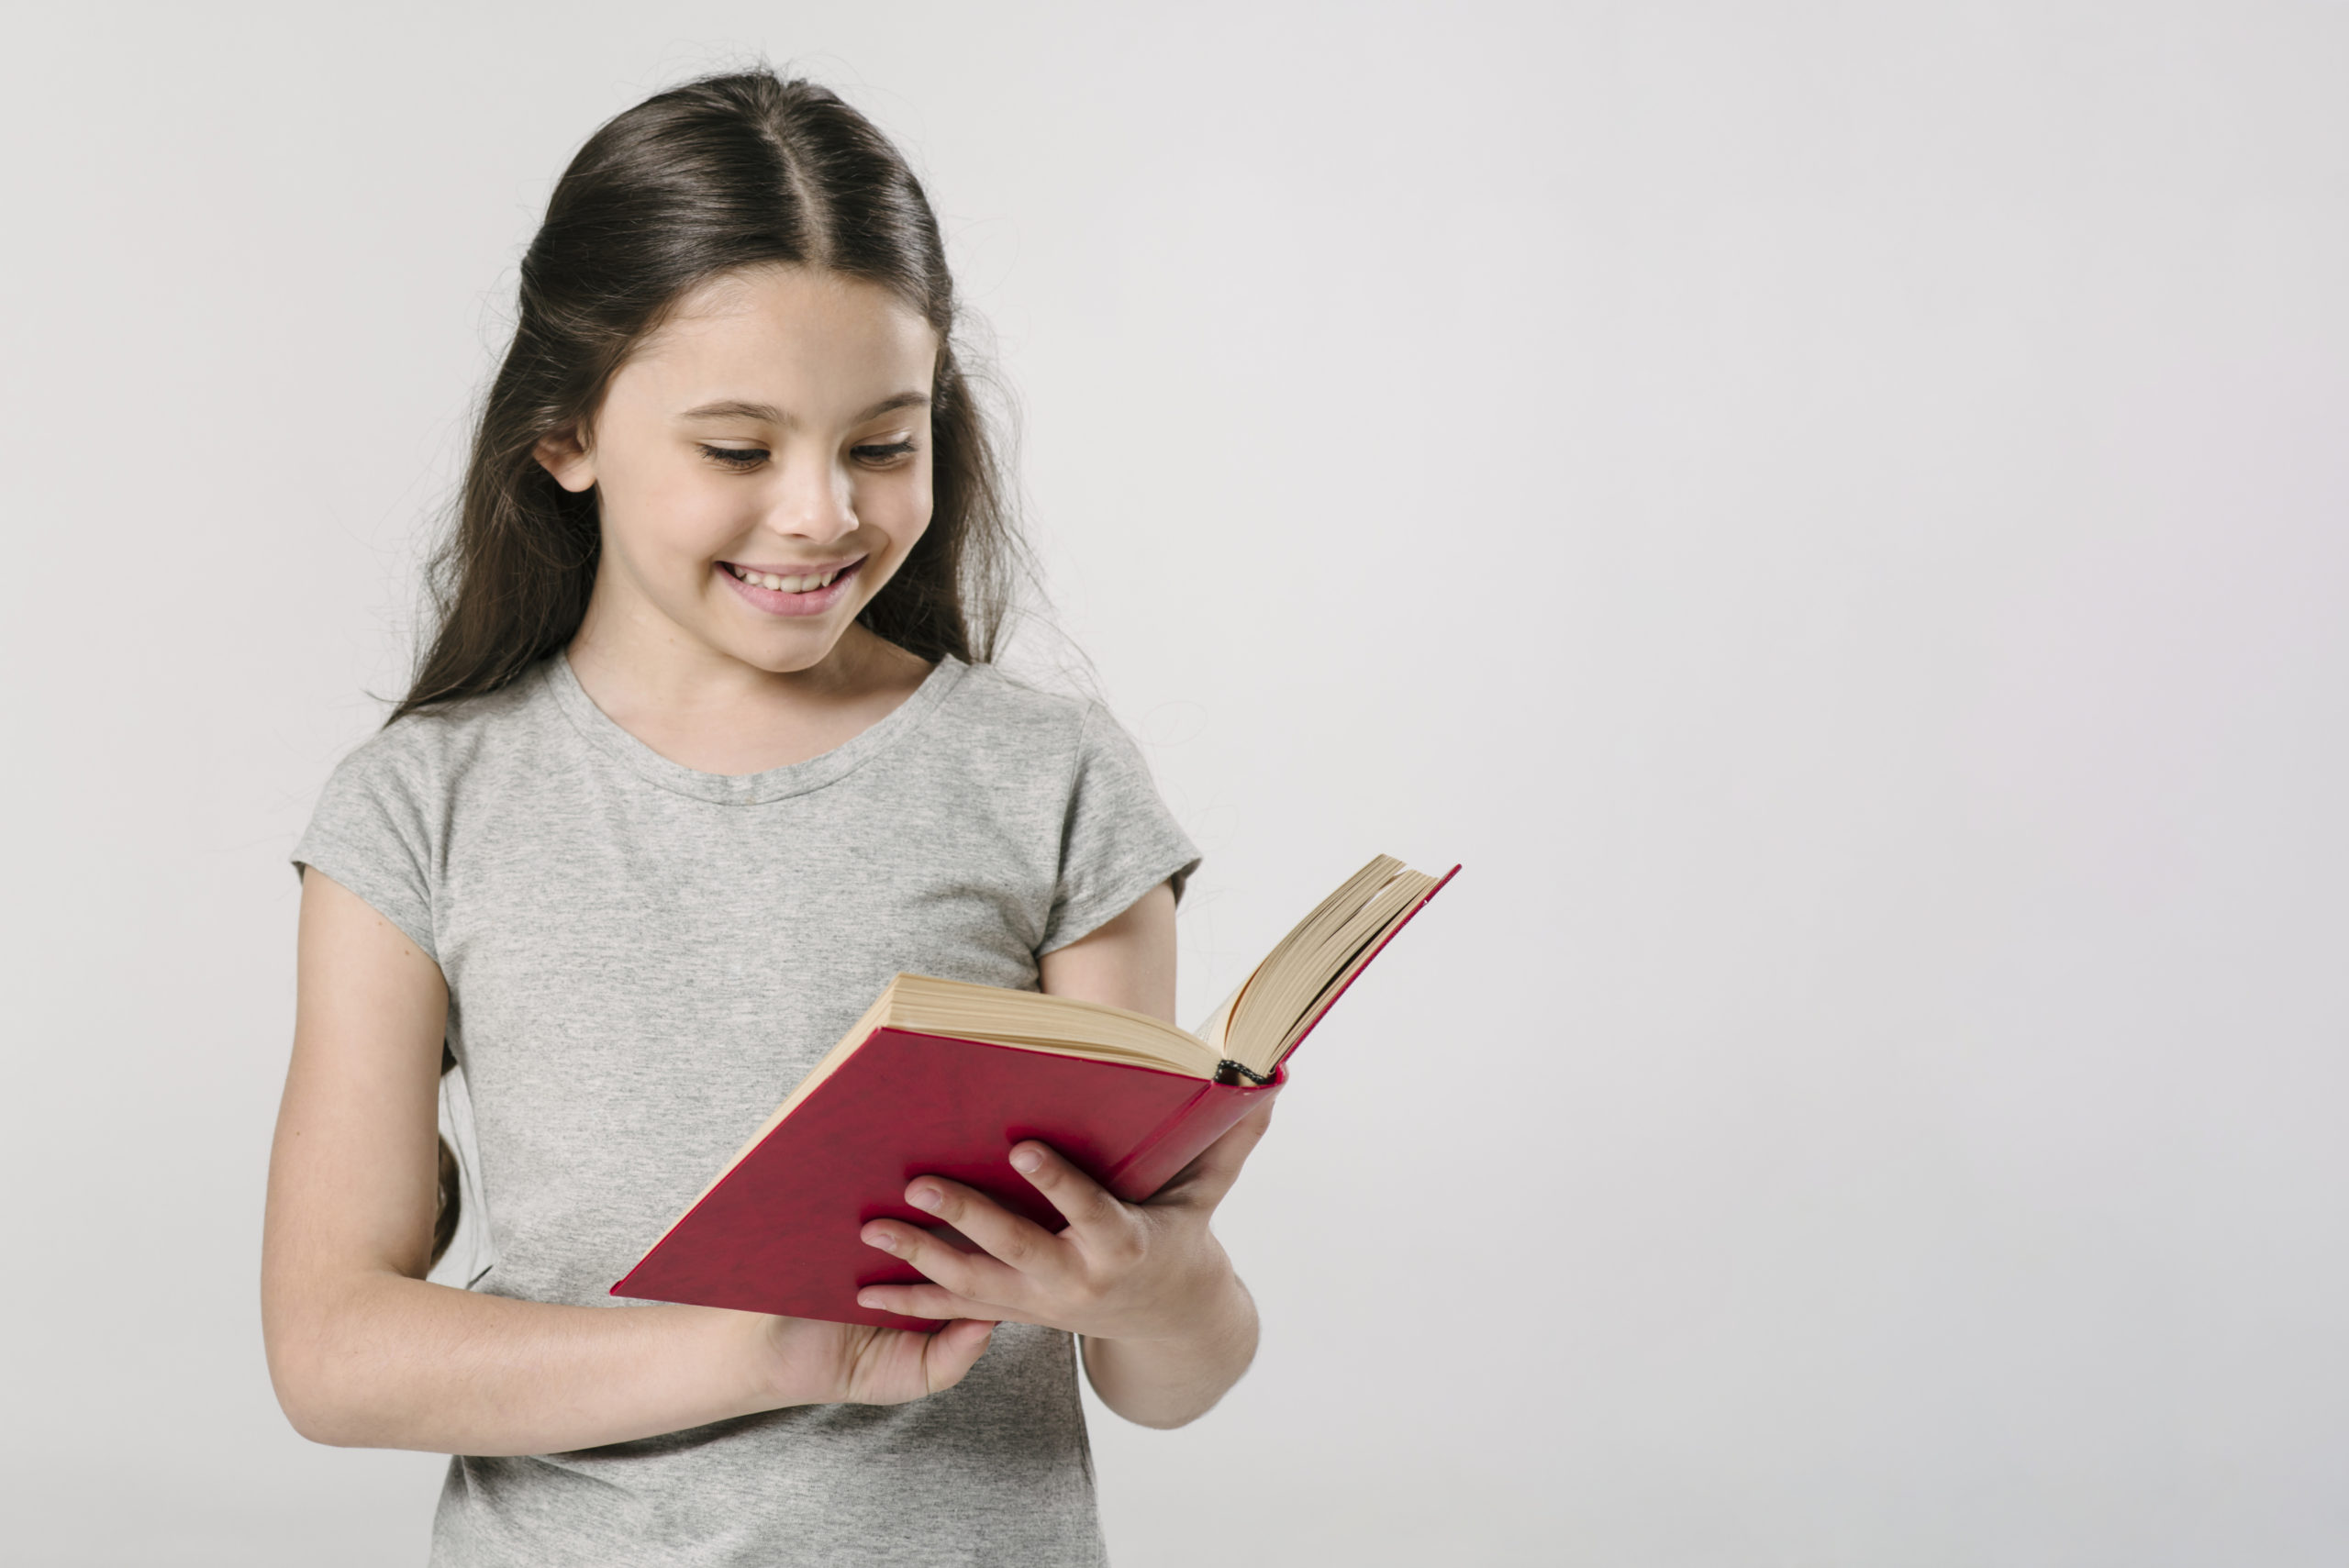 Читать книгу ученик 7. Ребенок с книгой в руках. Книги для детей. Книжки руками детей. Девочка читает книгу.